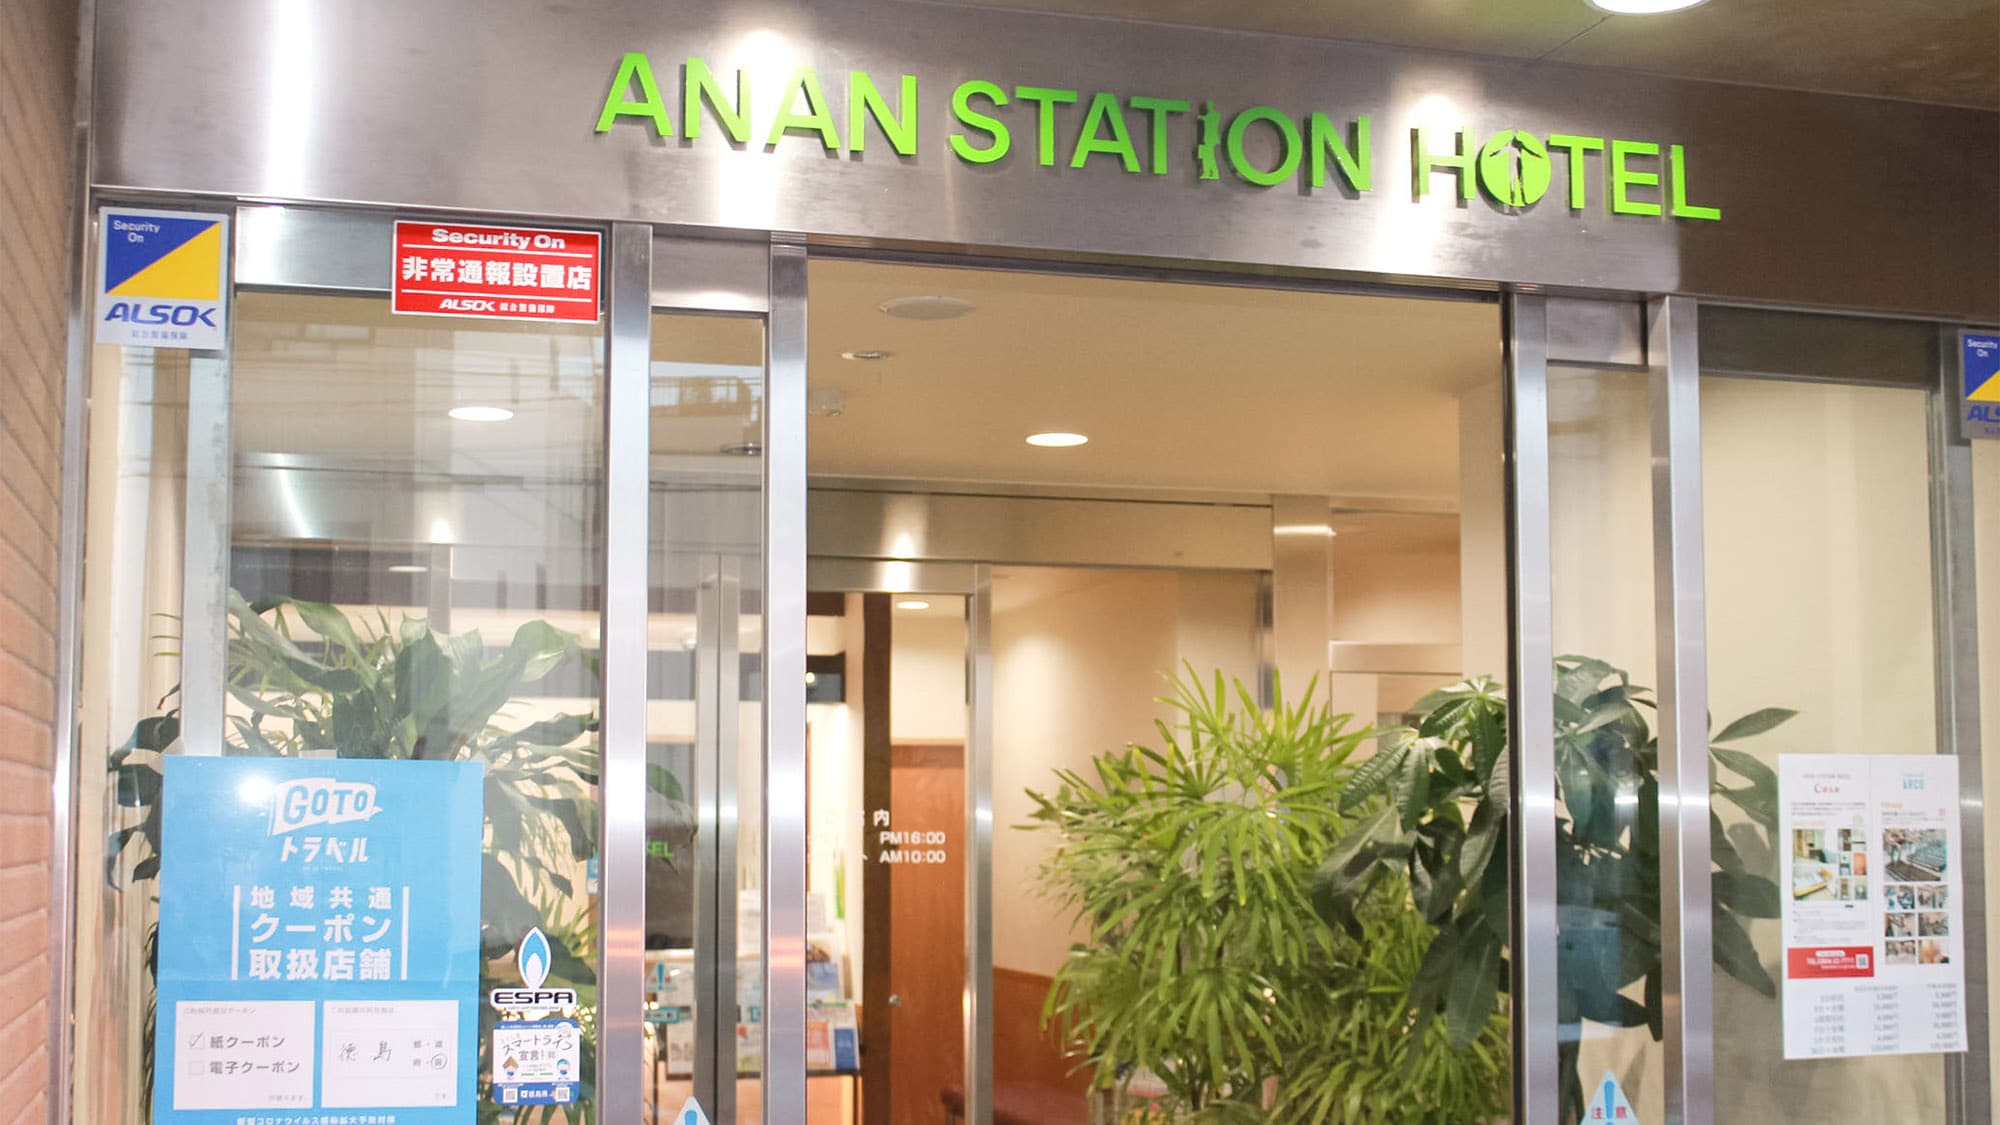 ยินดีต้อนรับสู่ Anan Station Hotel ♪